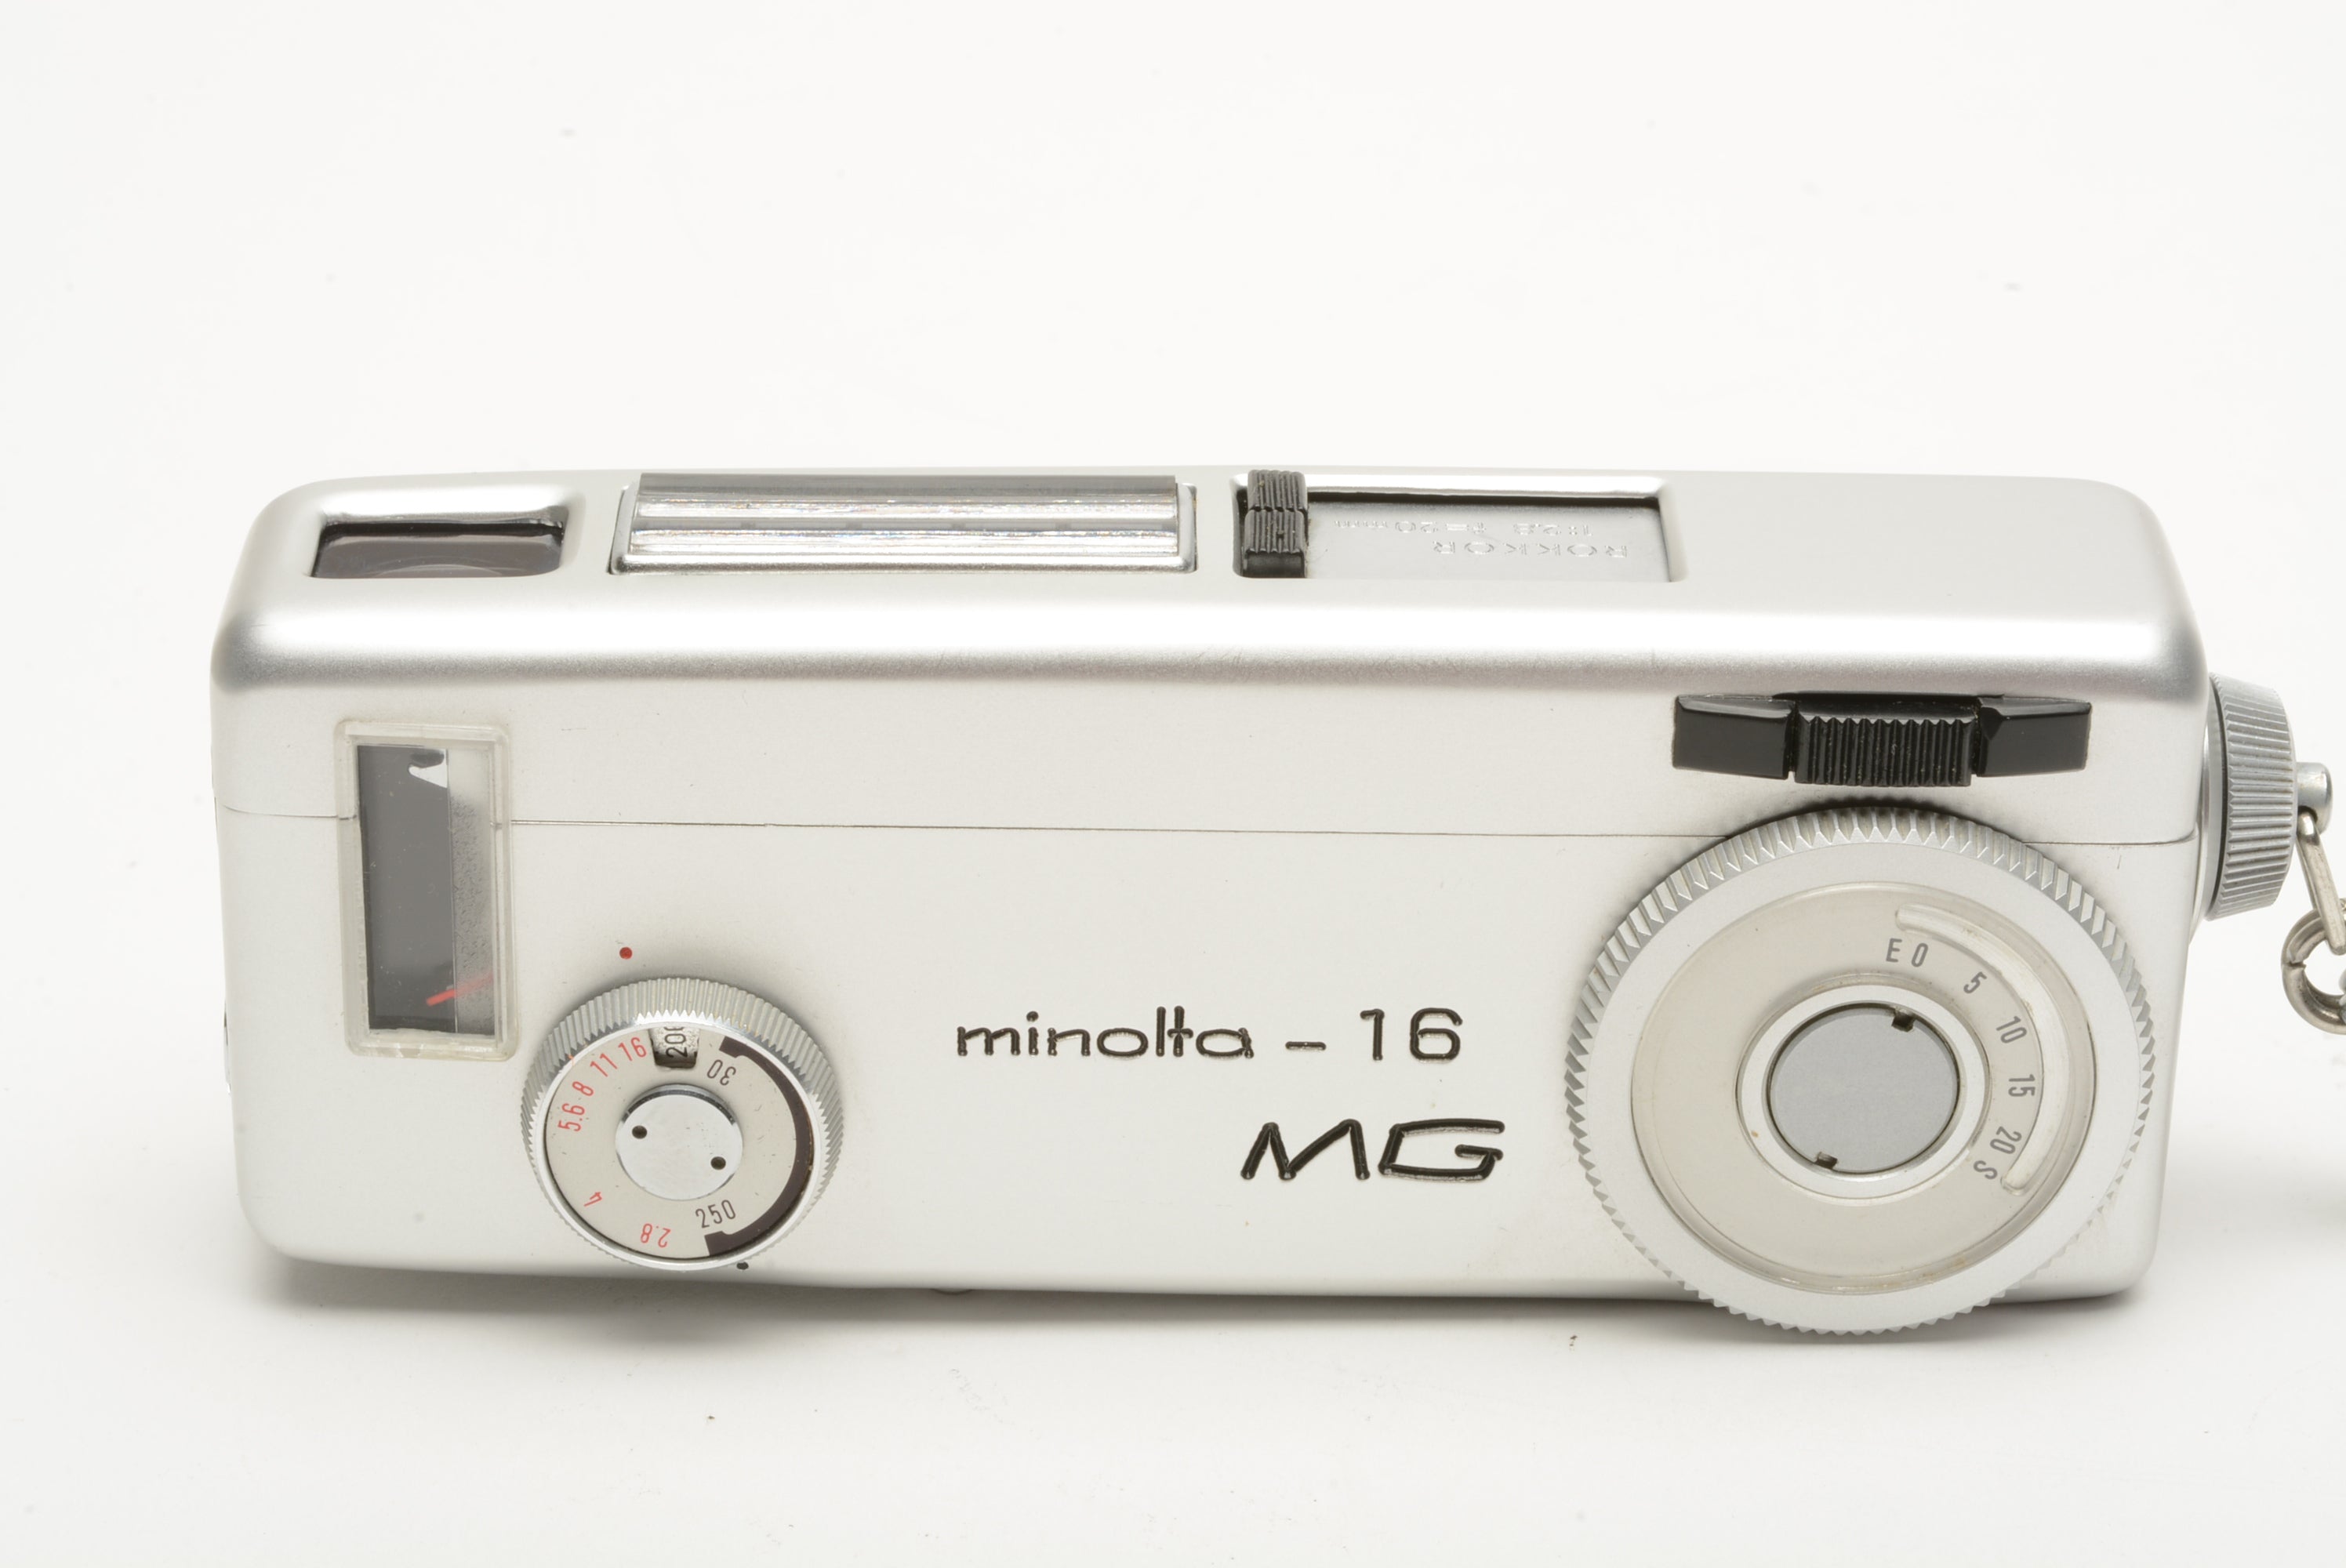 Minolta-16 MG 16mm Film Camera w/Rokkor 20mm f/2.8, MG Flash